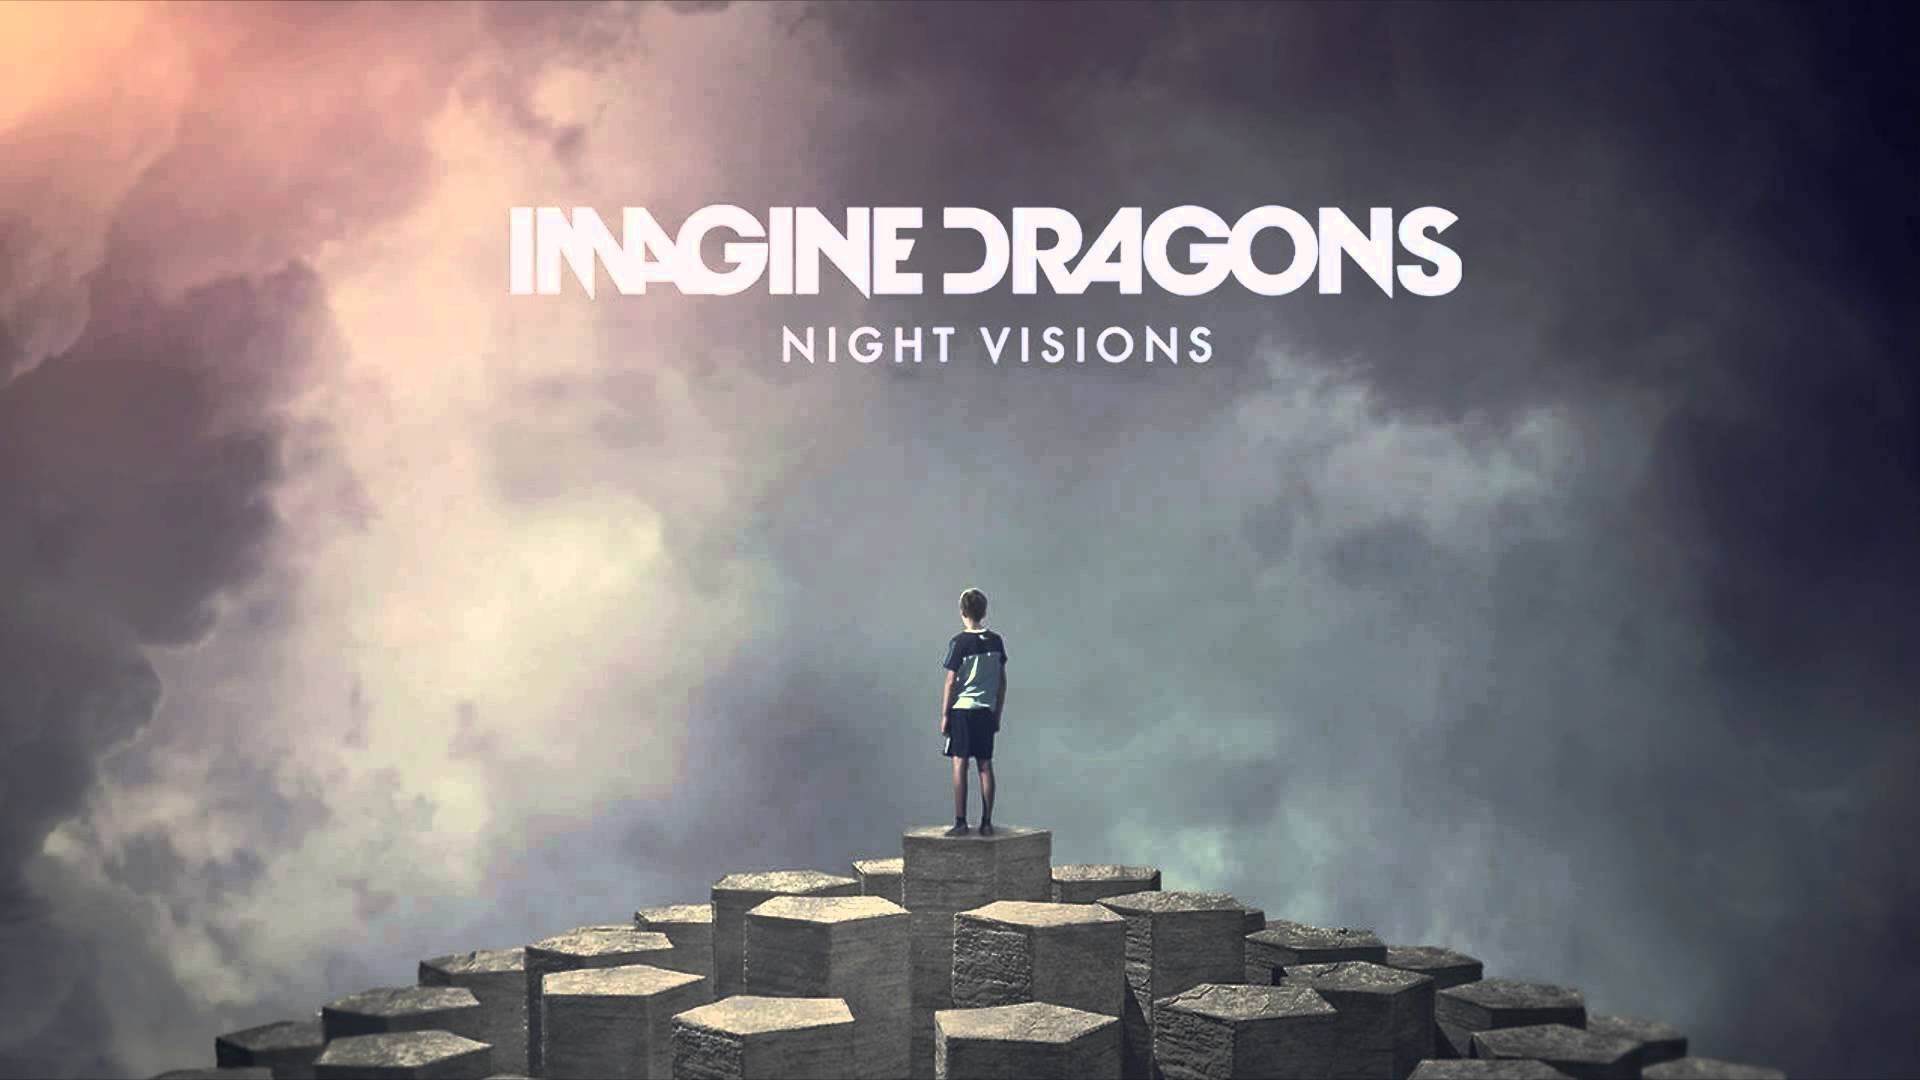 Имаджин слушать. Imagine Dragons альбом Night Visions. Радиоактив imagine Dragons. Imagine Dragons Radioactive обложка. Imagine Dragons Night Visions обложка.